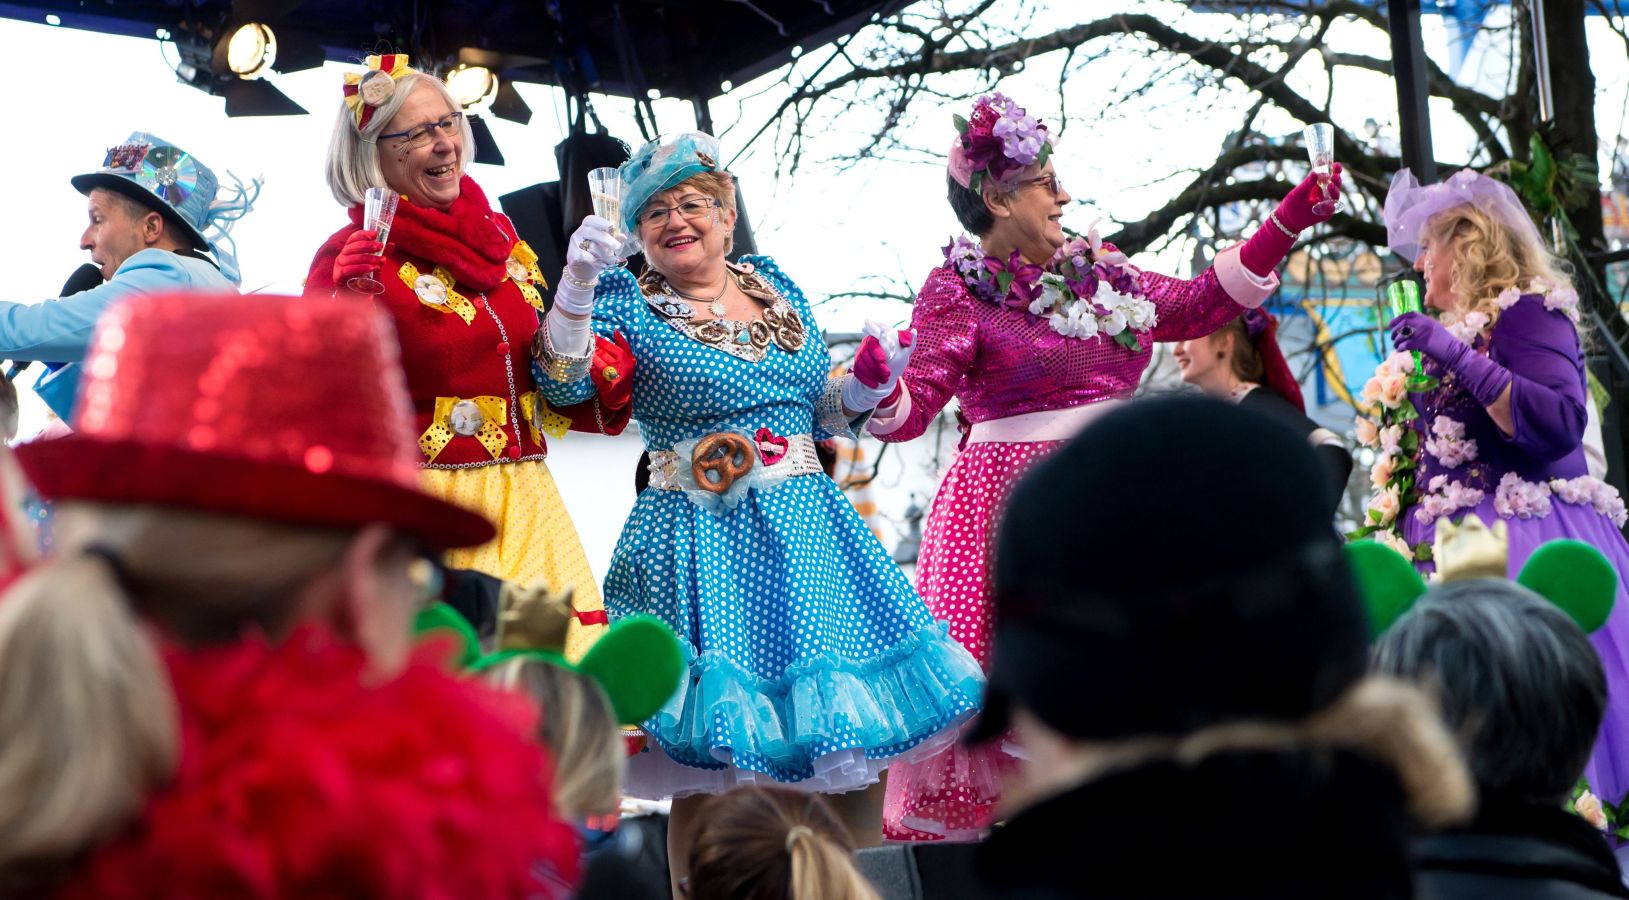 Se acaba el carnaval en Munich con la tradicional Danza de las Mujeres de Mercado